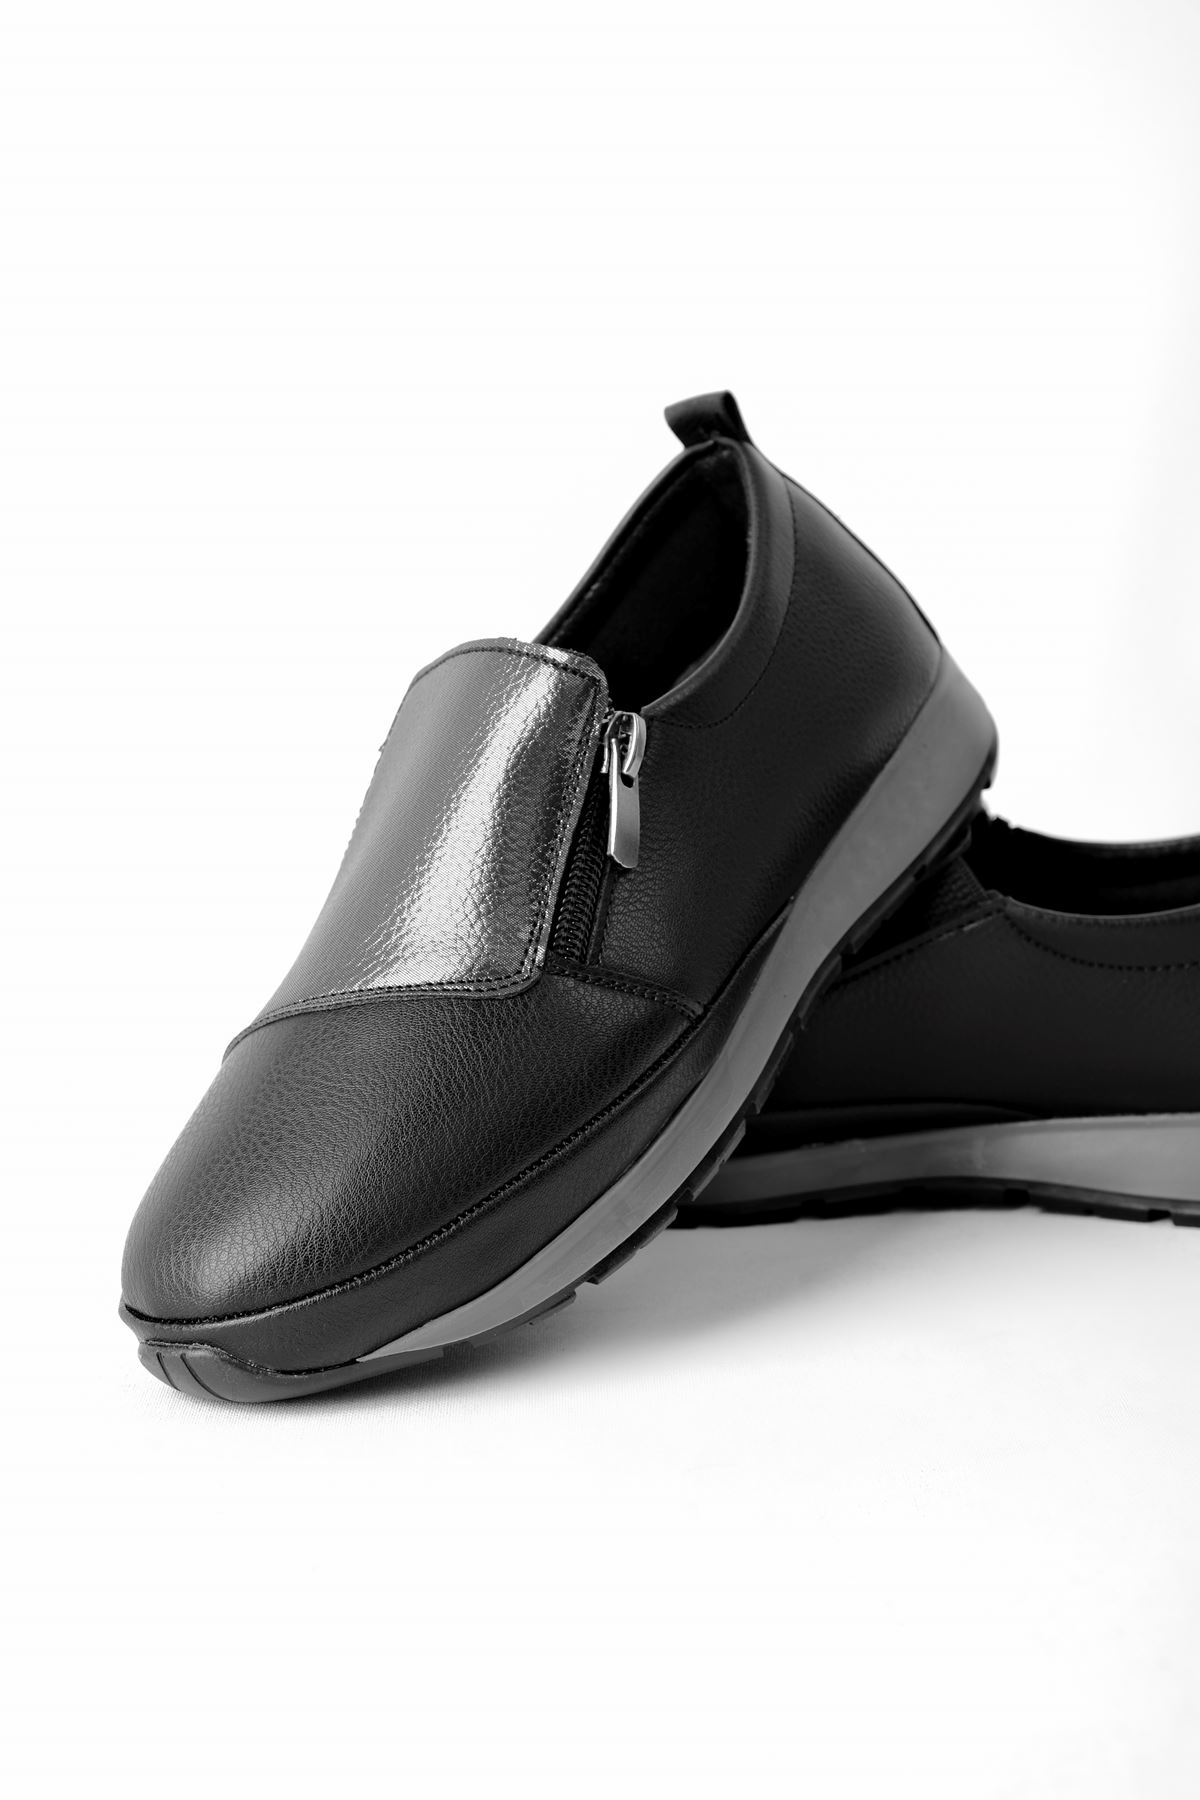 Celinda Kadın Günlük Ayakkabı Fermuar Detaylı-siyah